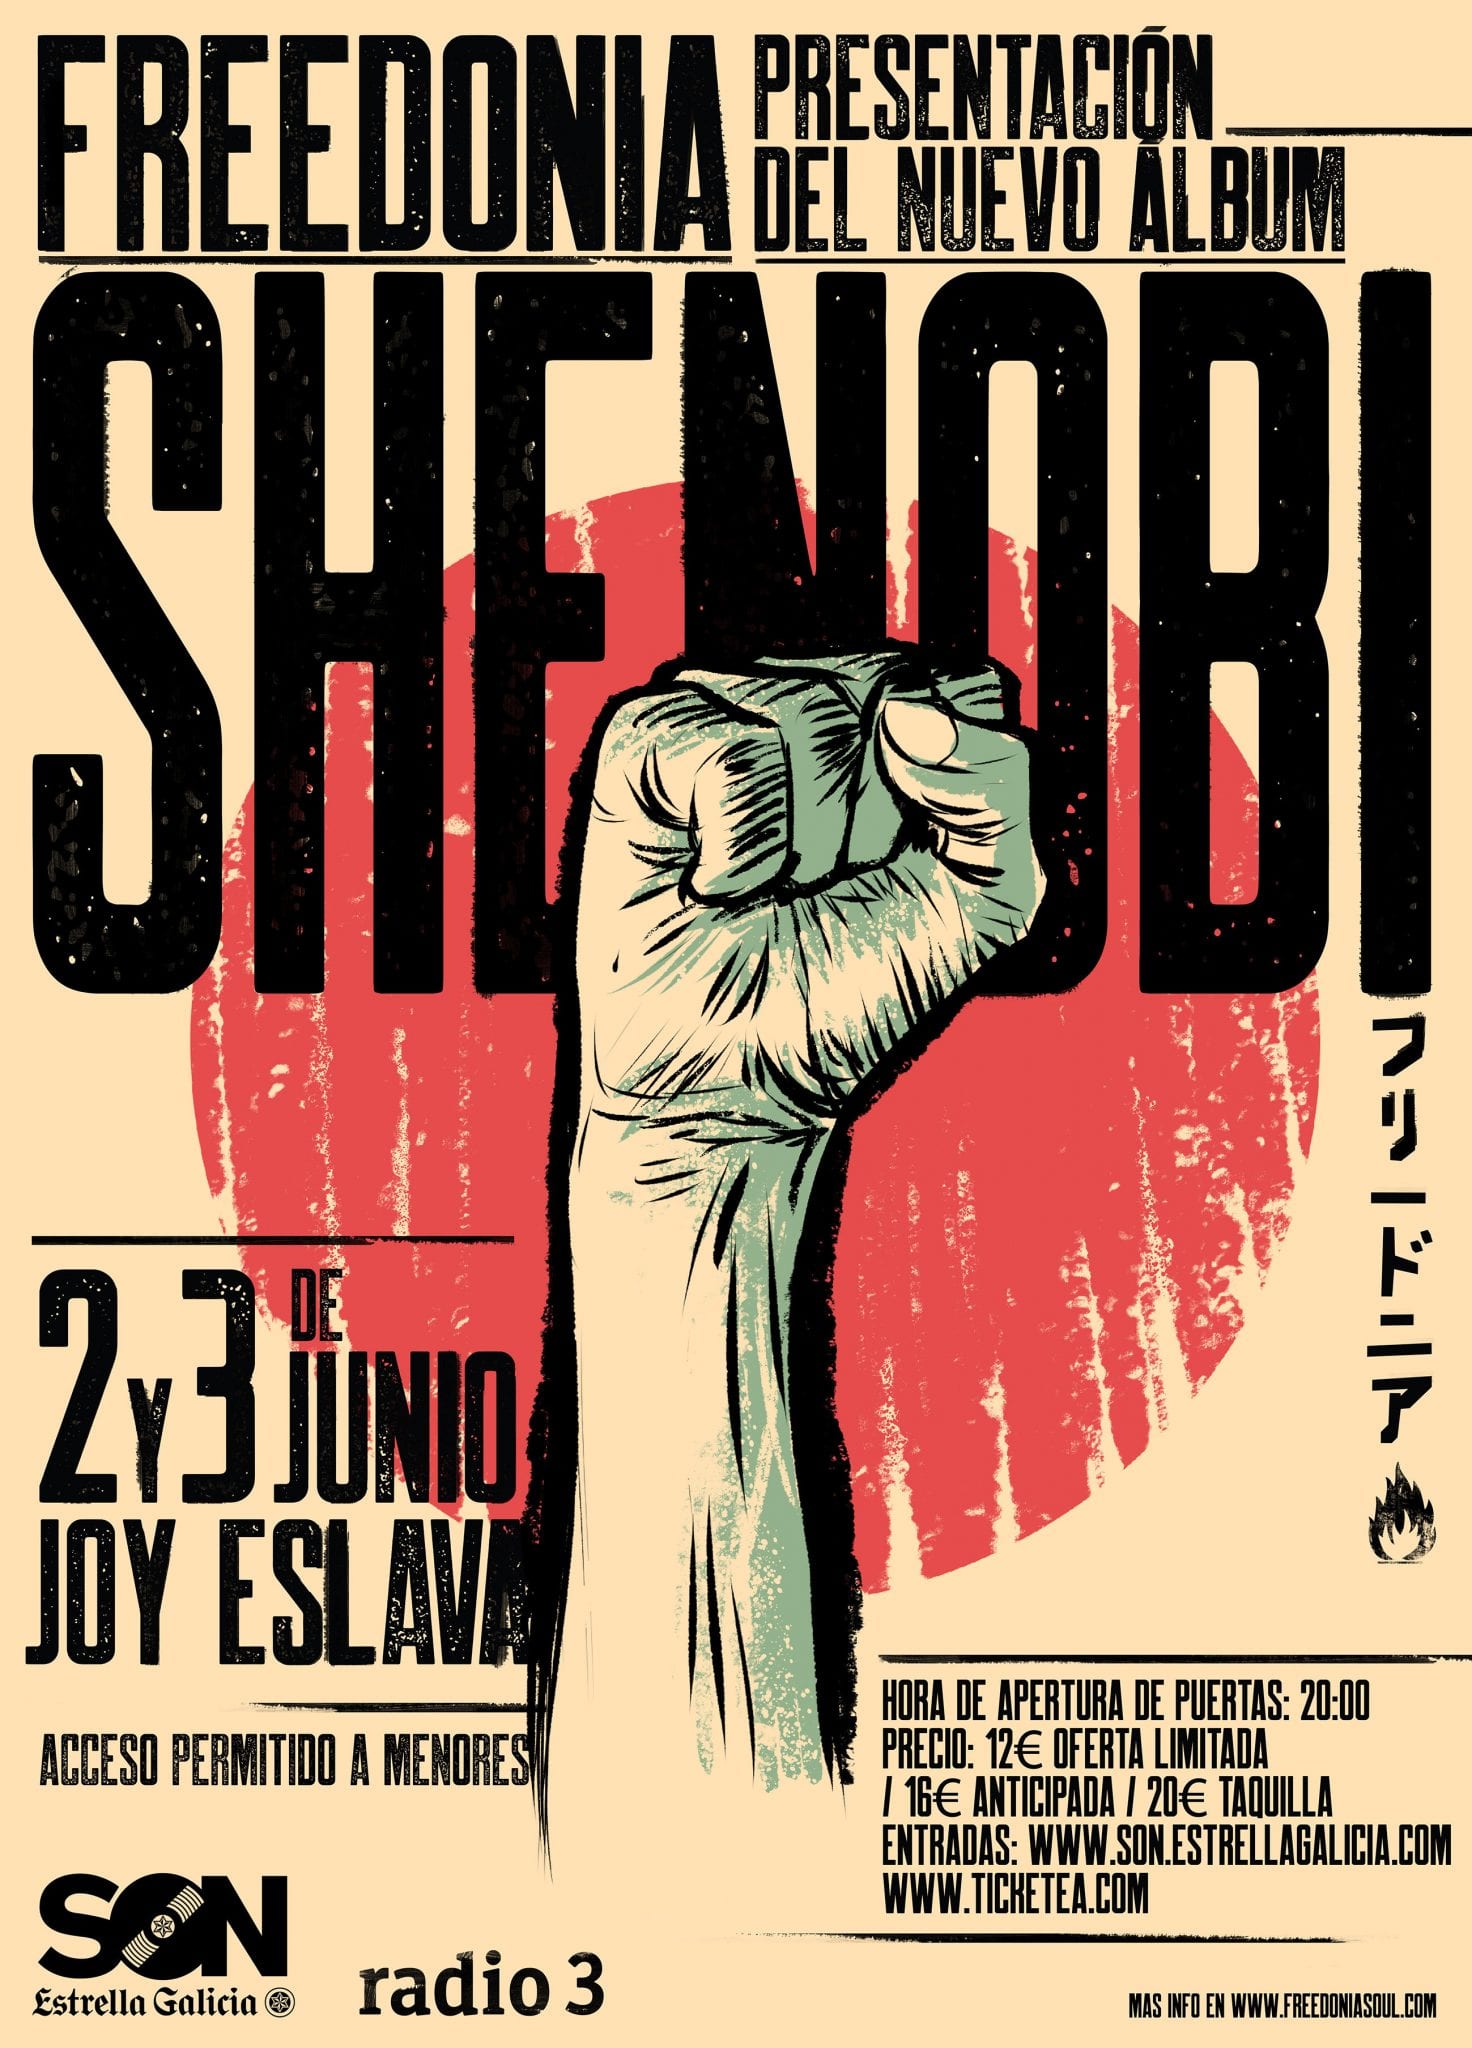 Freedonia – 2 y 3 de junio en Madrid, primeras fechas de presentación de su nuevo disco Shenobi